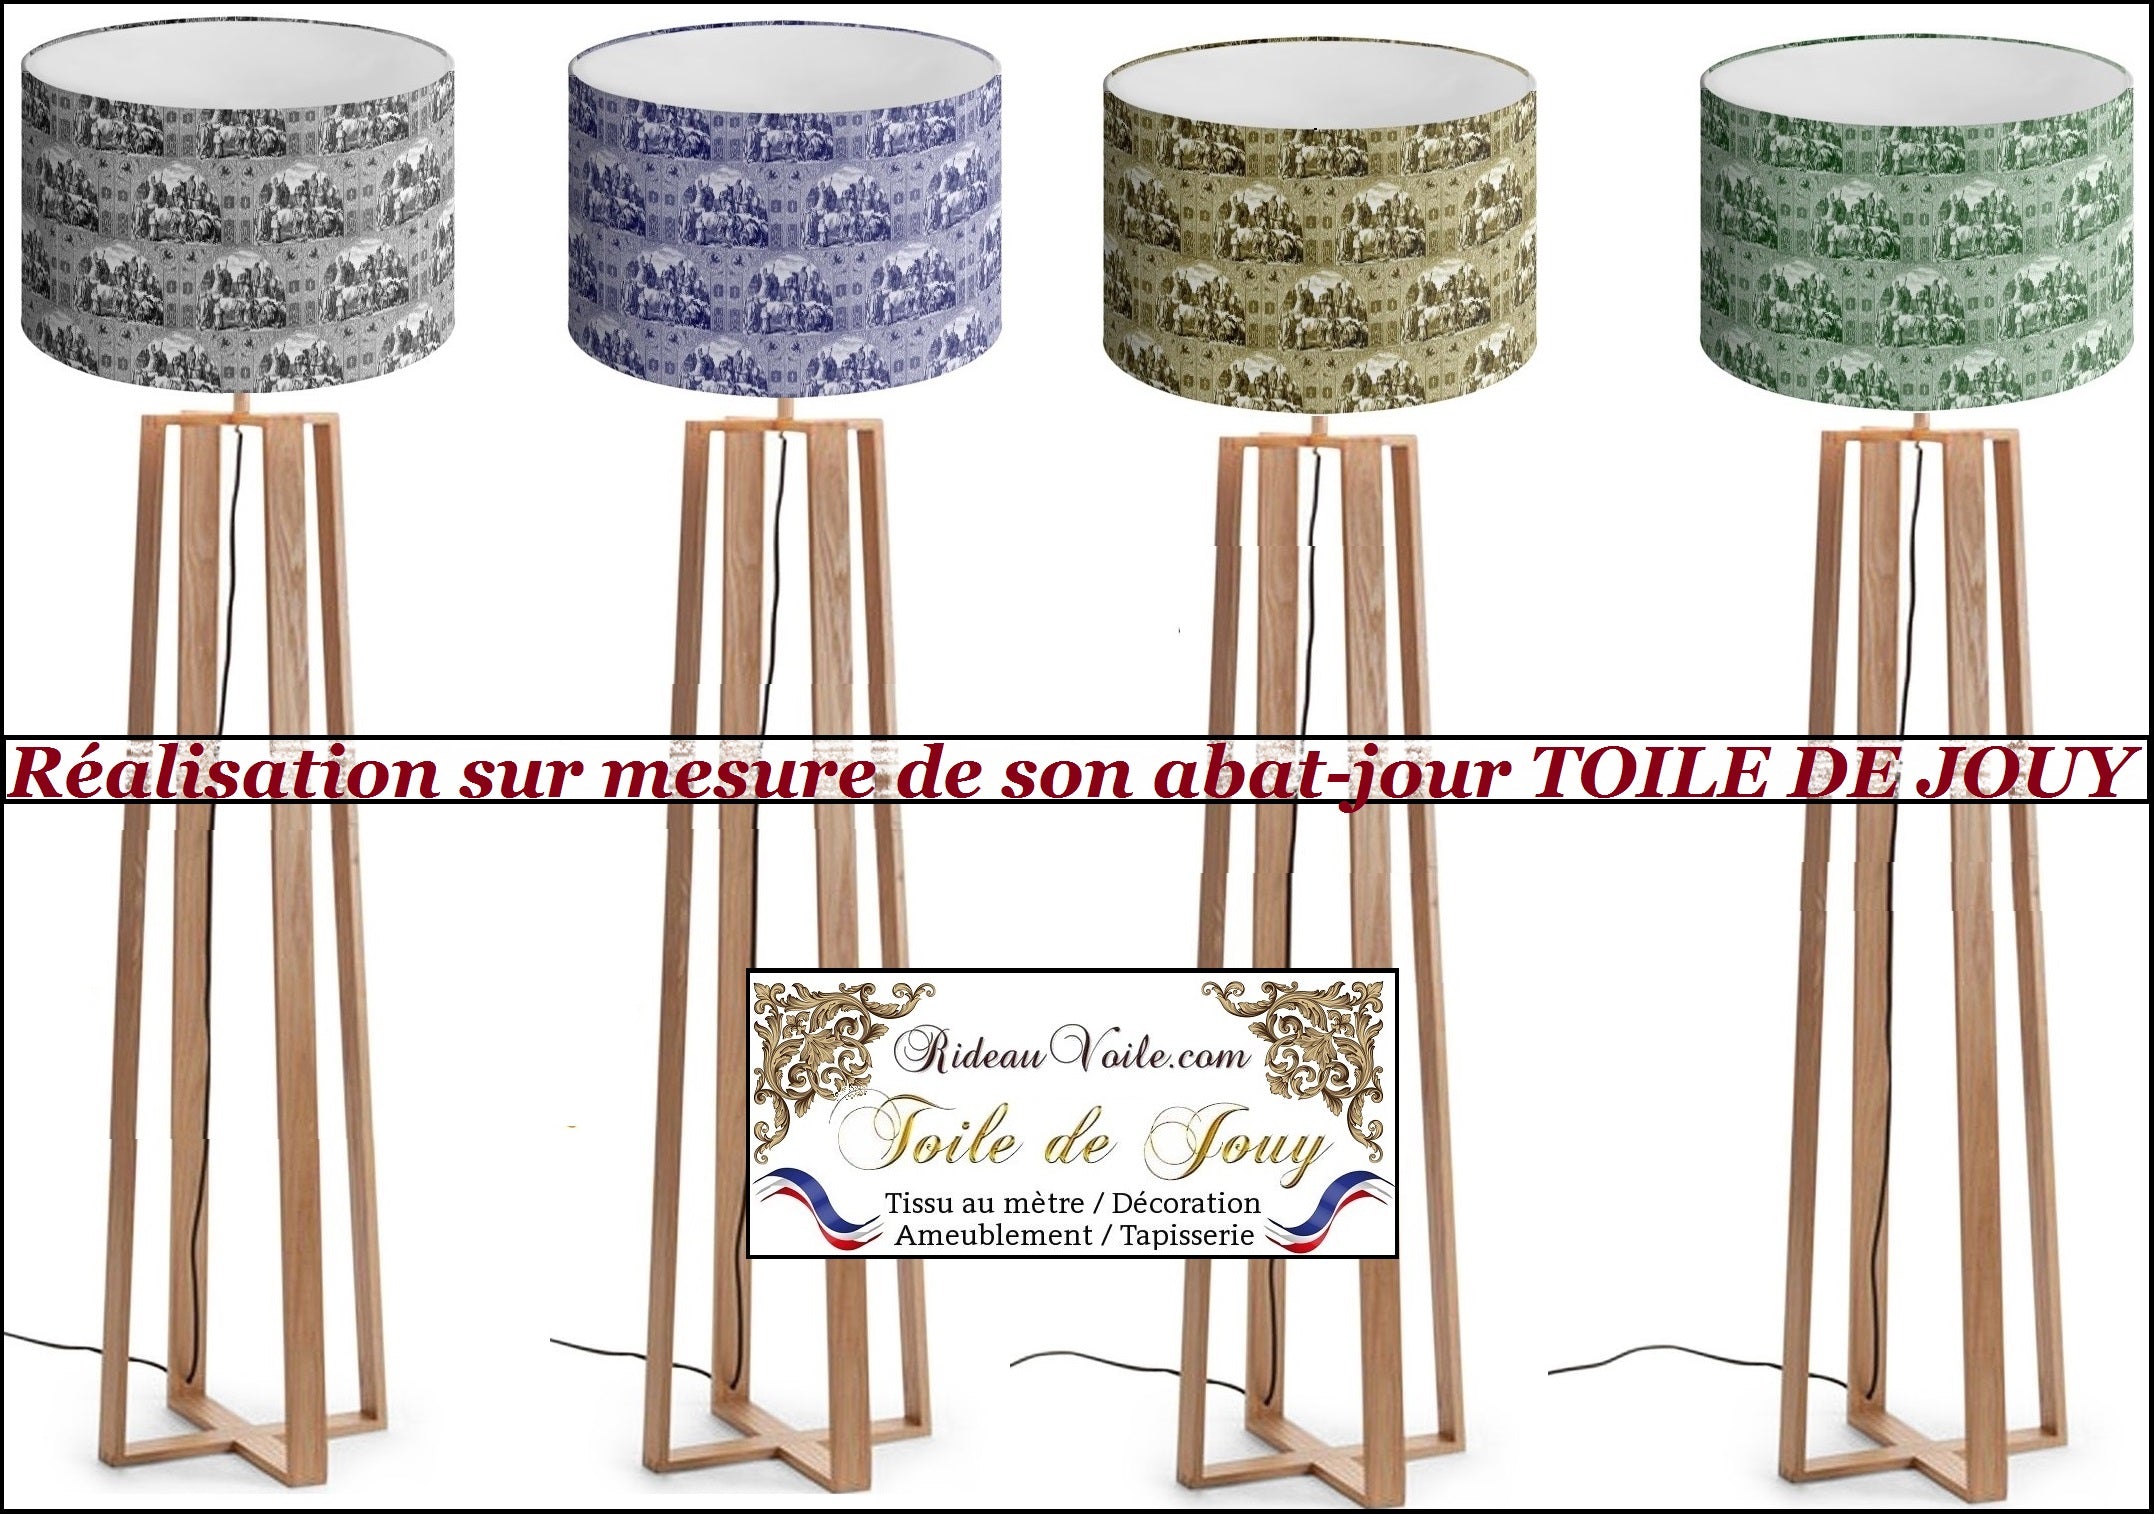 Comment décoration Toile de Jouy abat-jour papier peint rideau store sur mesure tissu ameublement tapisserie